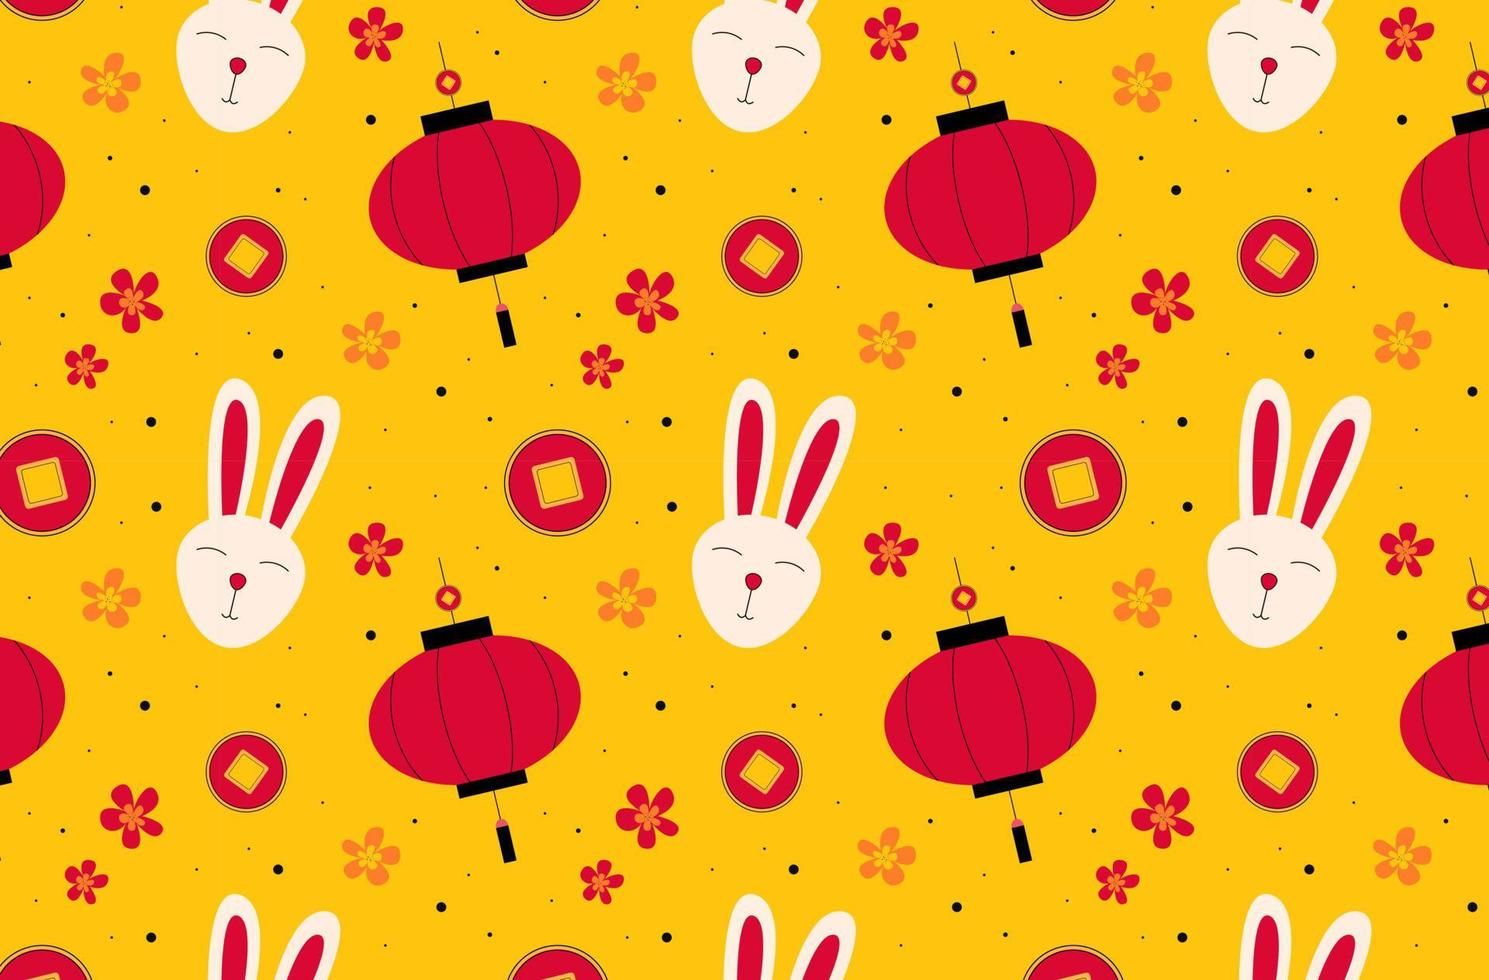 año Nuevo Chino. patrón con un conejo, linternas chinas, monedas y flores vector